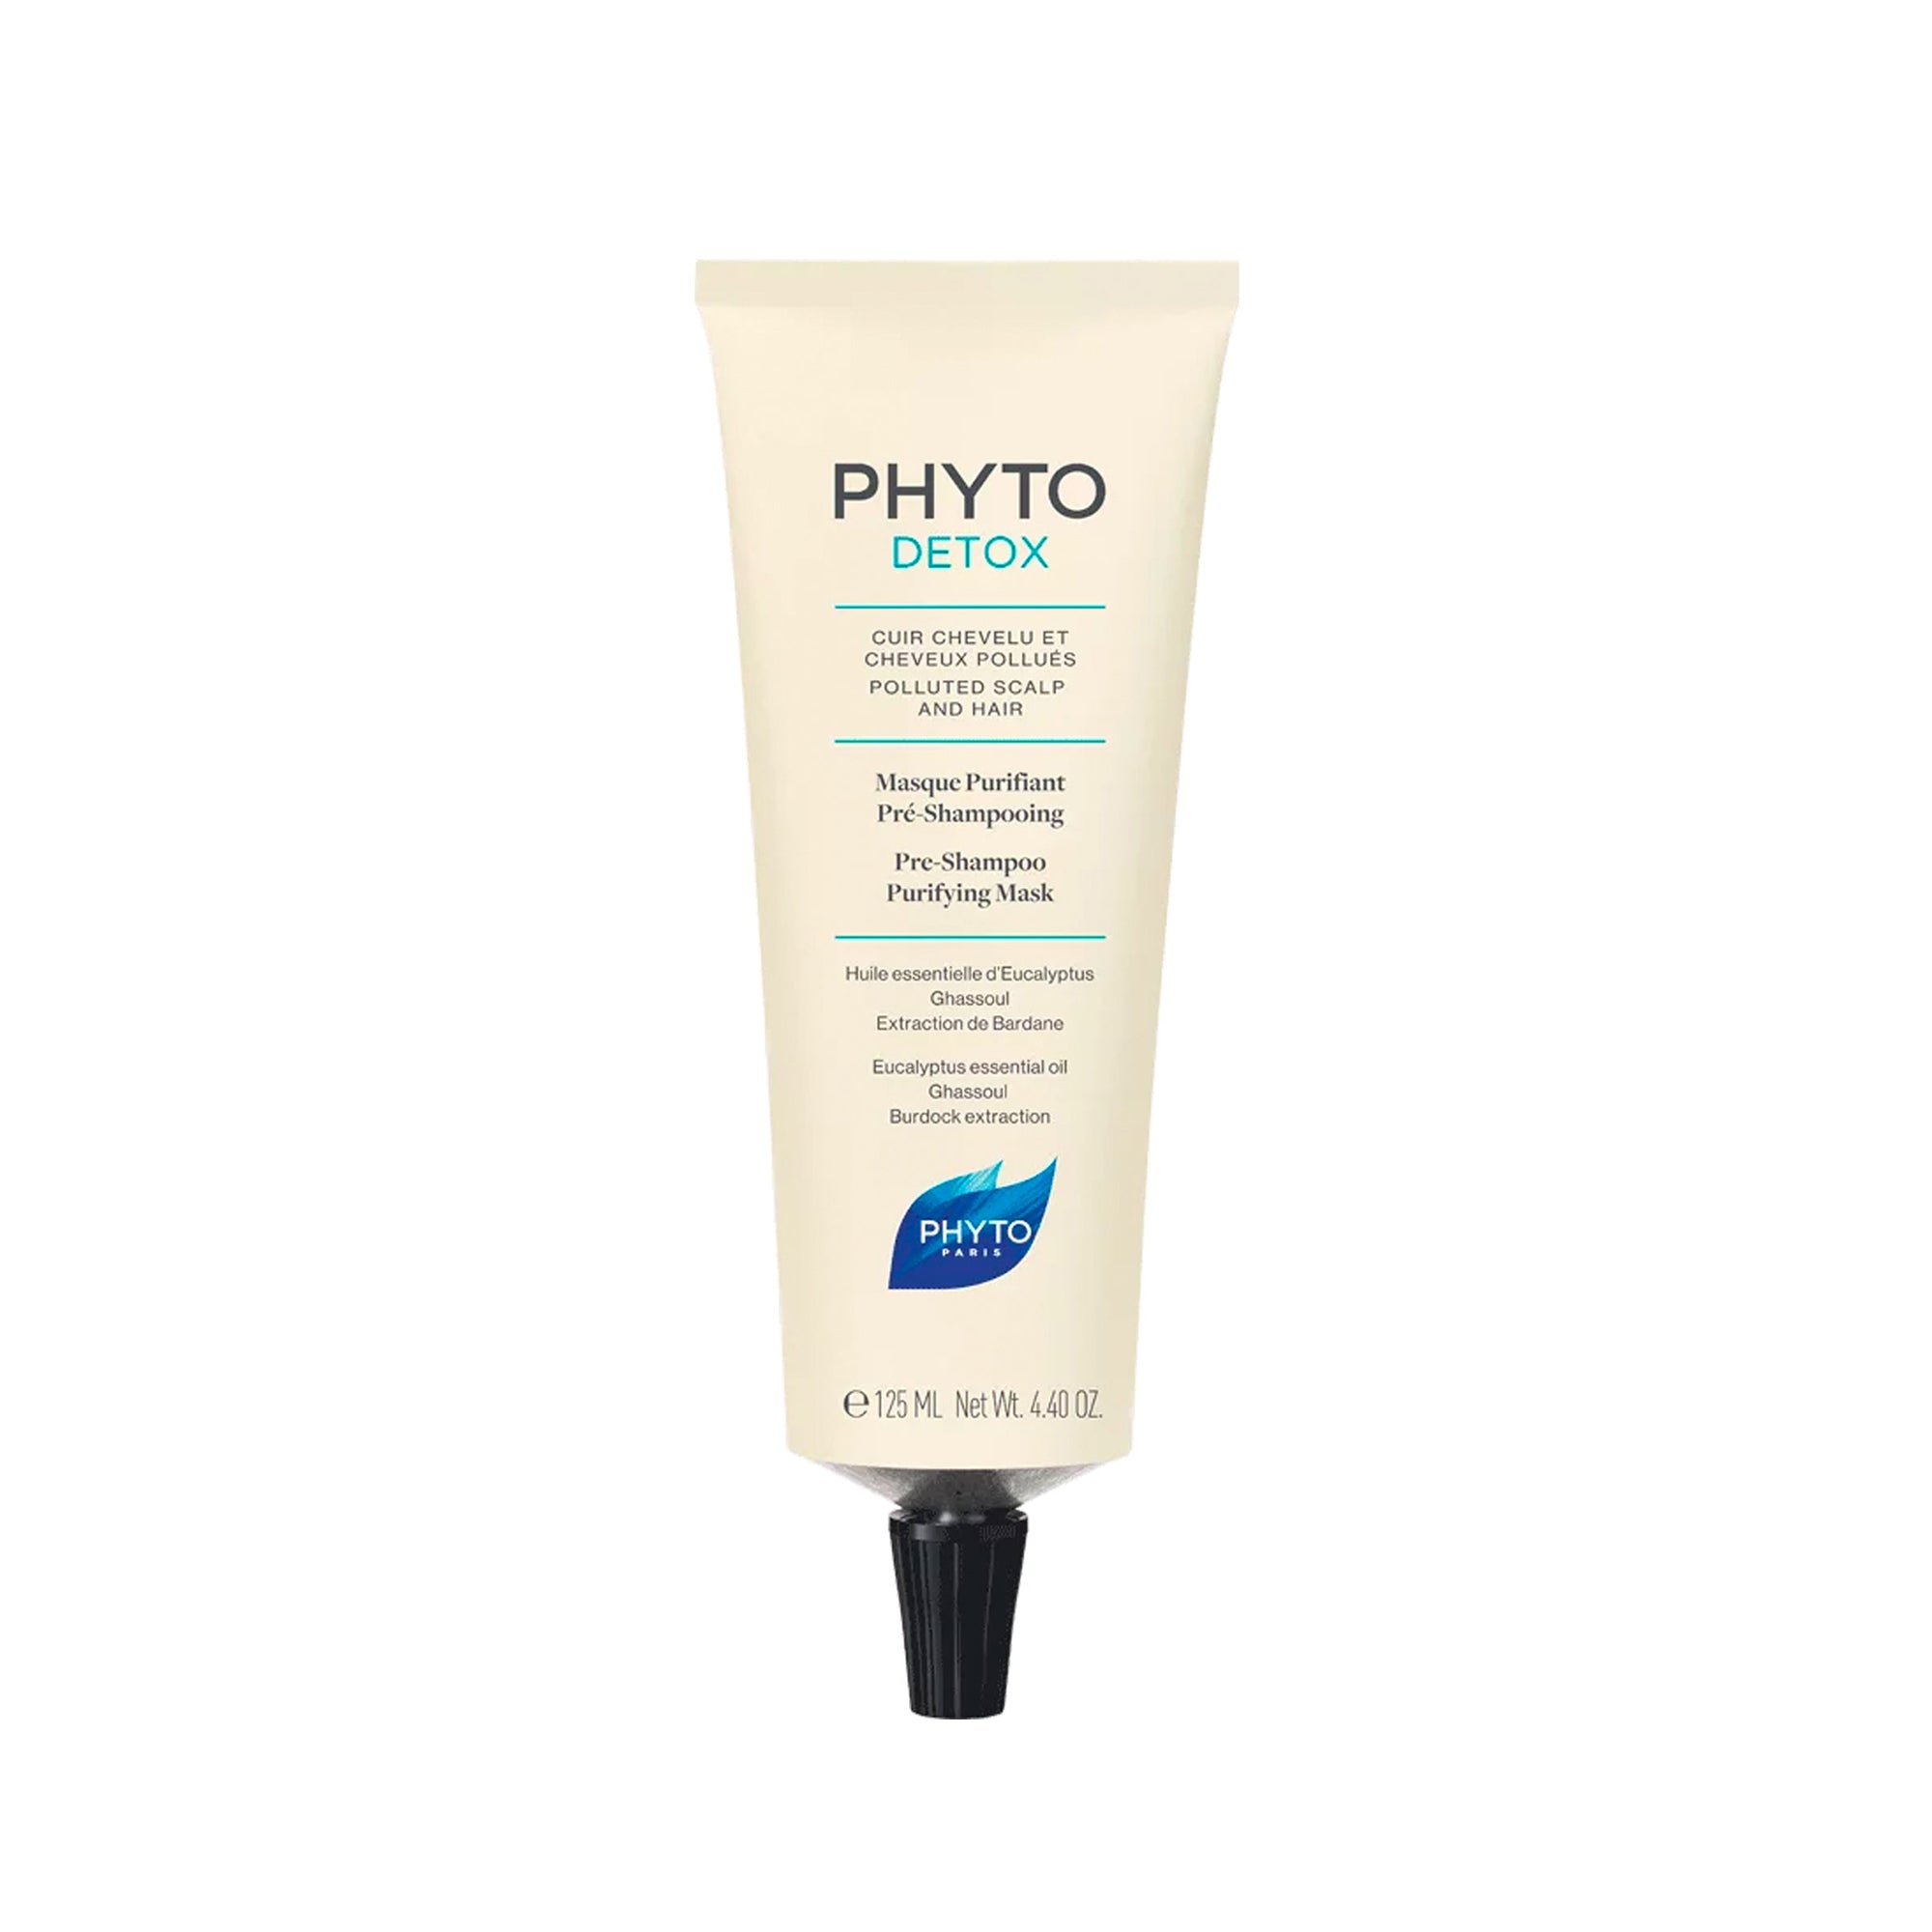 Phyto Detox Pre-Shampoo Purifying Mask 4.4oz / 4.4OZ